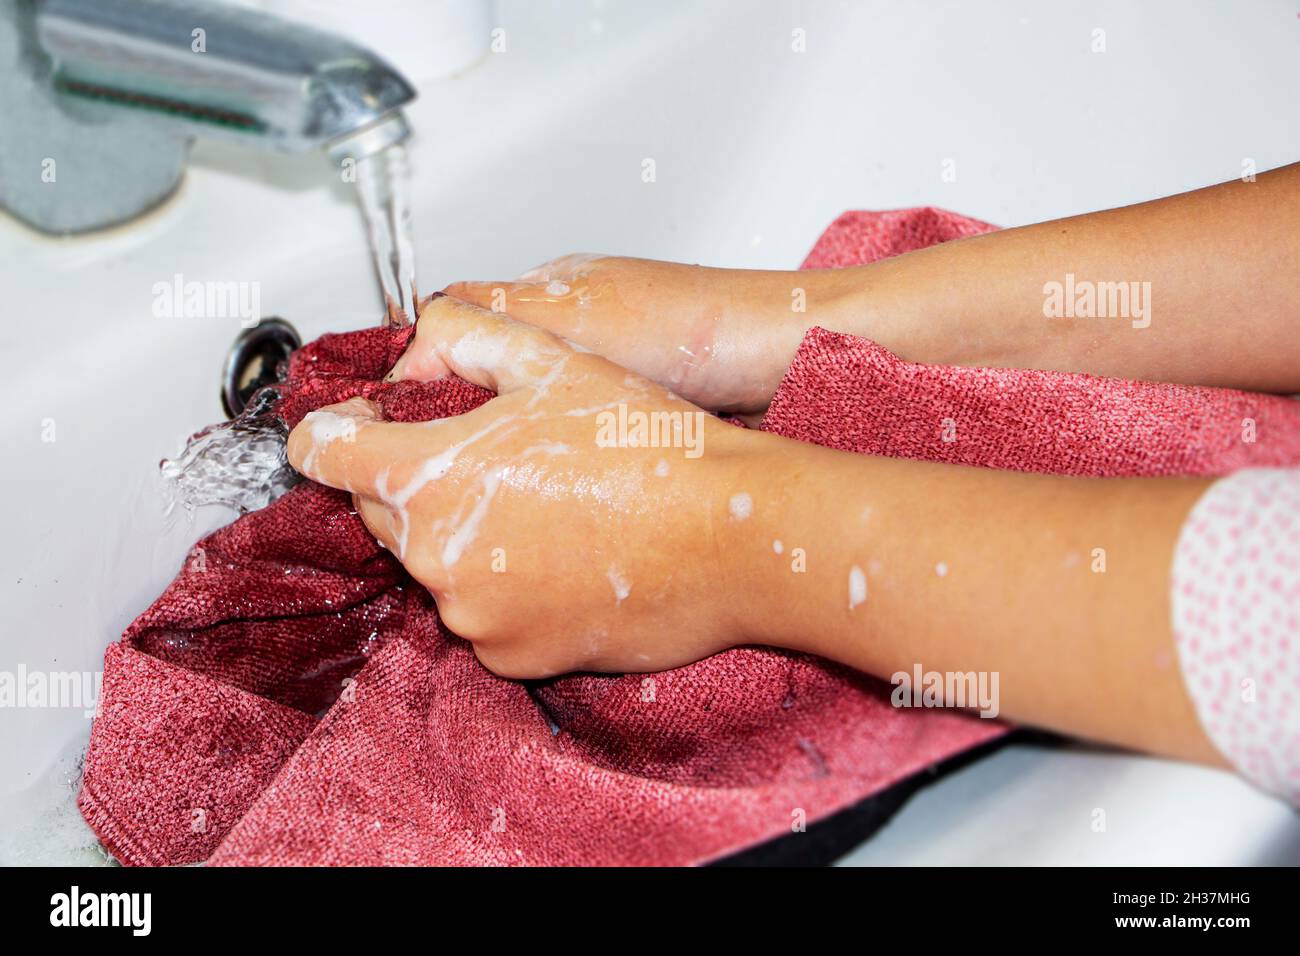 Lavaggio a mano di cose colorate. Le mani delle donne si lavano e strinzuppano le cose colorate in acqua saponata. Foto Stock